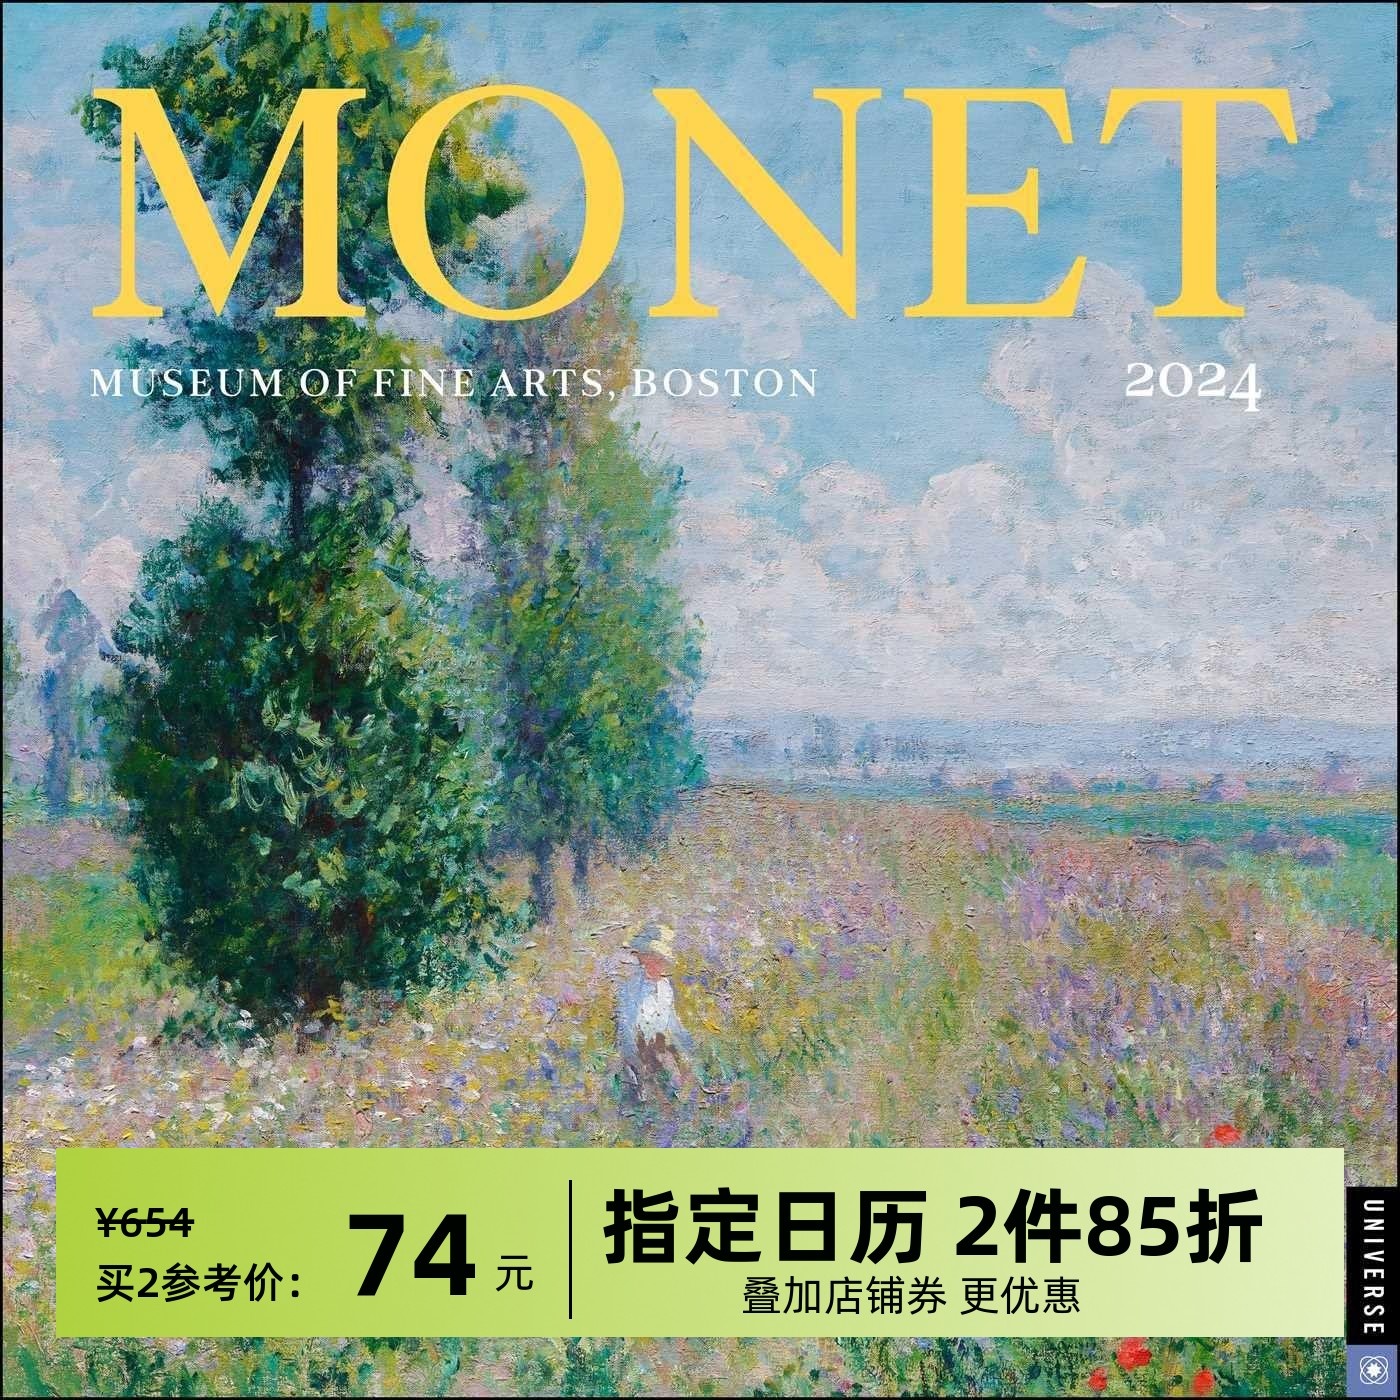 现货 莫奈 波士顿美术馆 2024年挂历 艺术日历 新年礼物 博物馆周边 英文原版 Monet 2024 Wall Calendar 印象派画作 MFA Boston